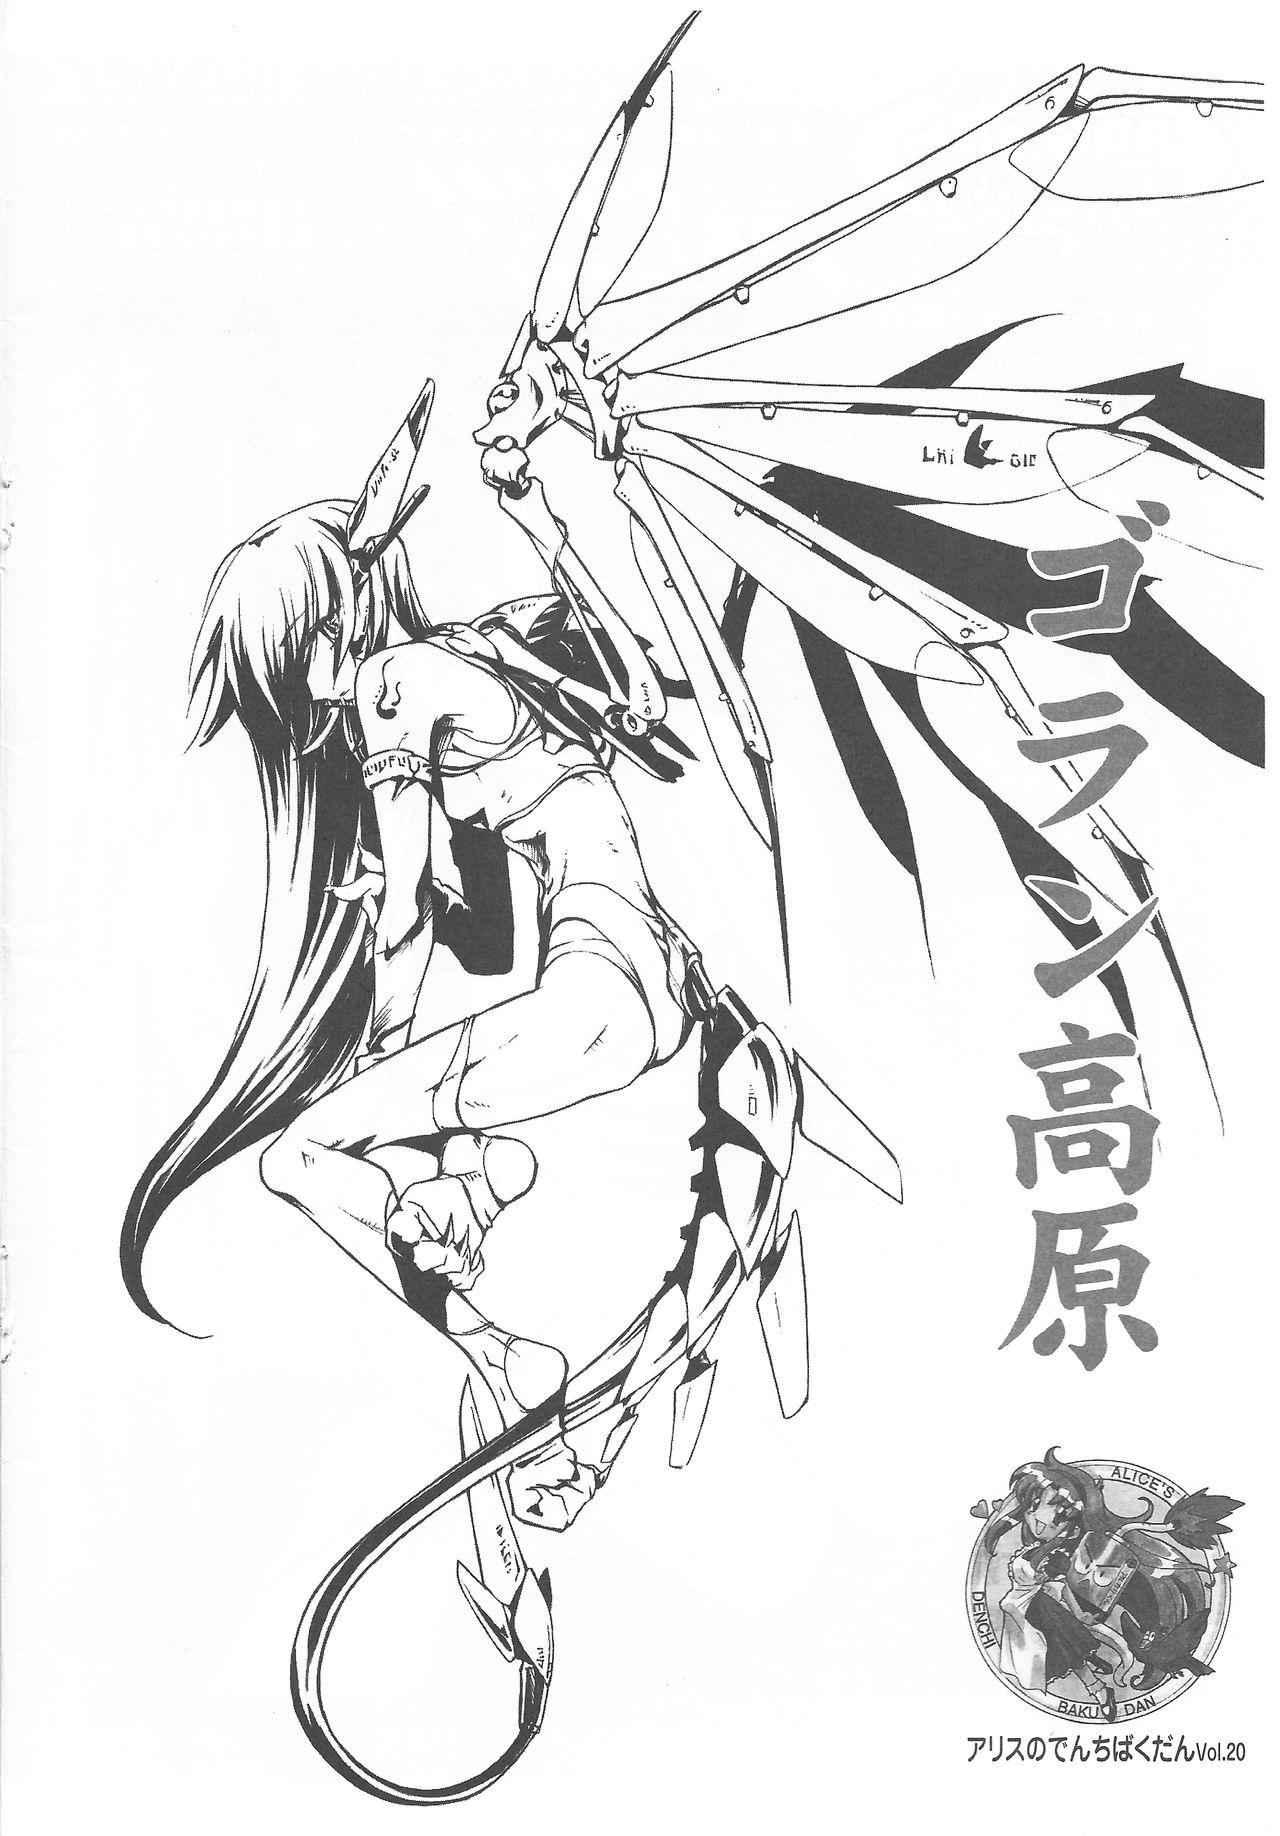 Arisu no Denchi Bakudan Vol. 20 0